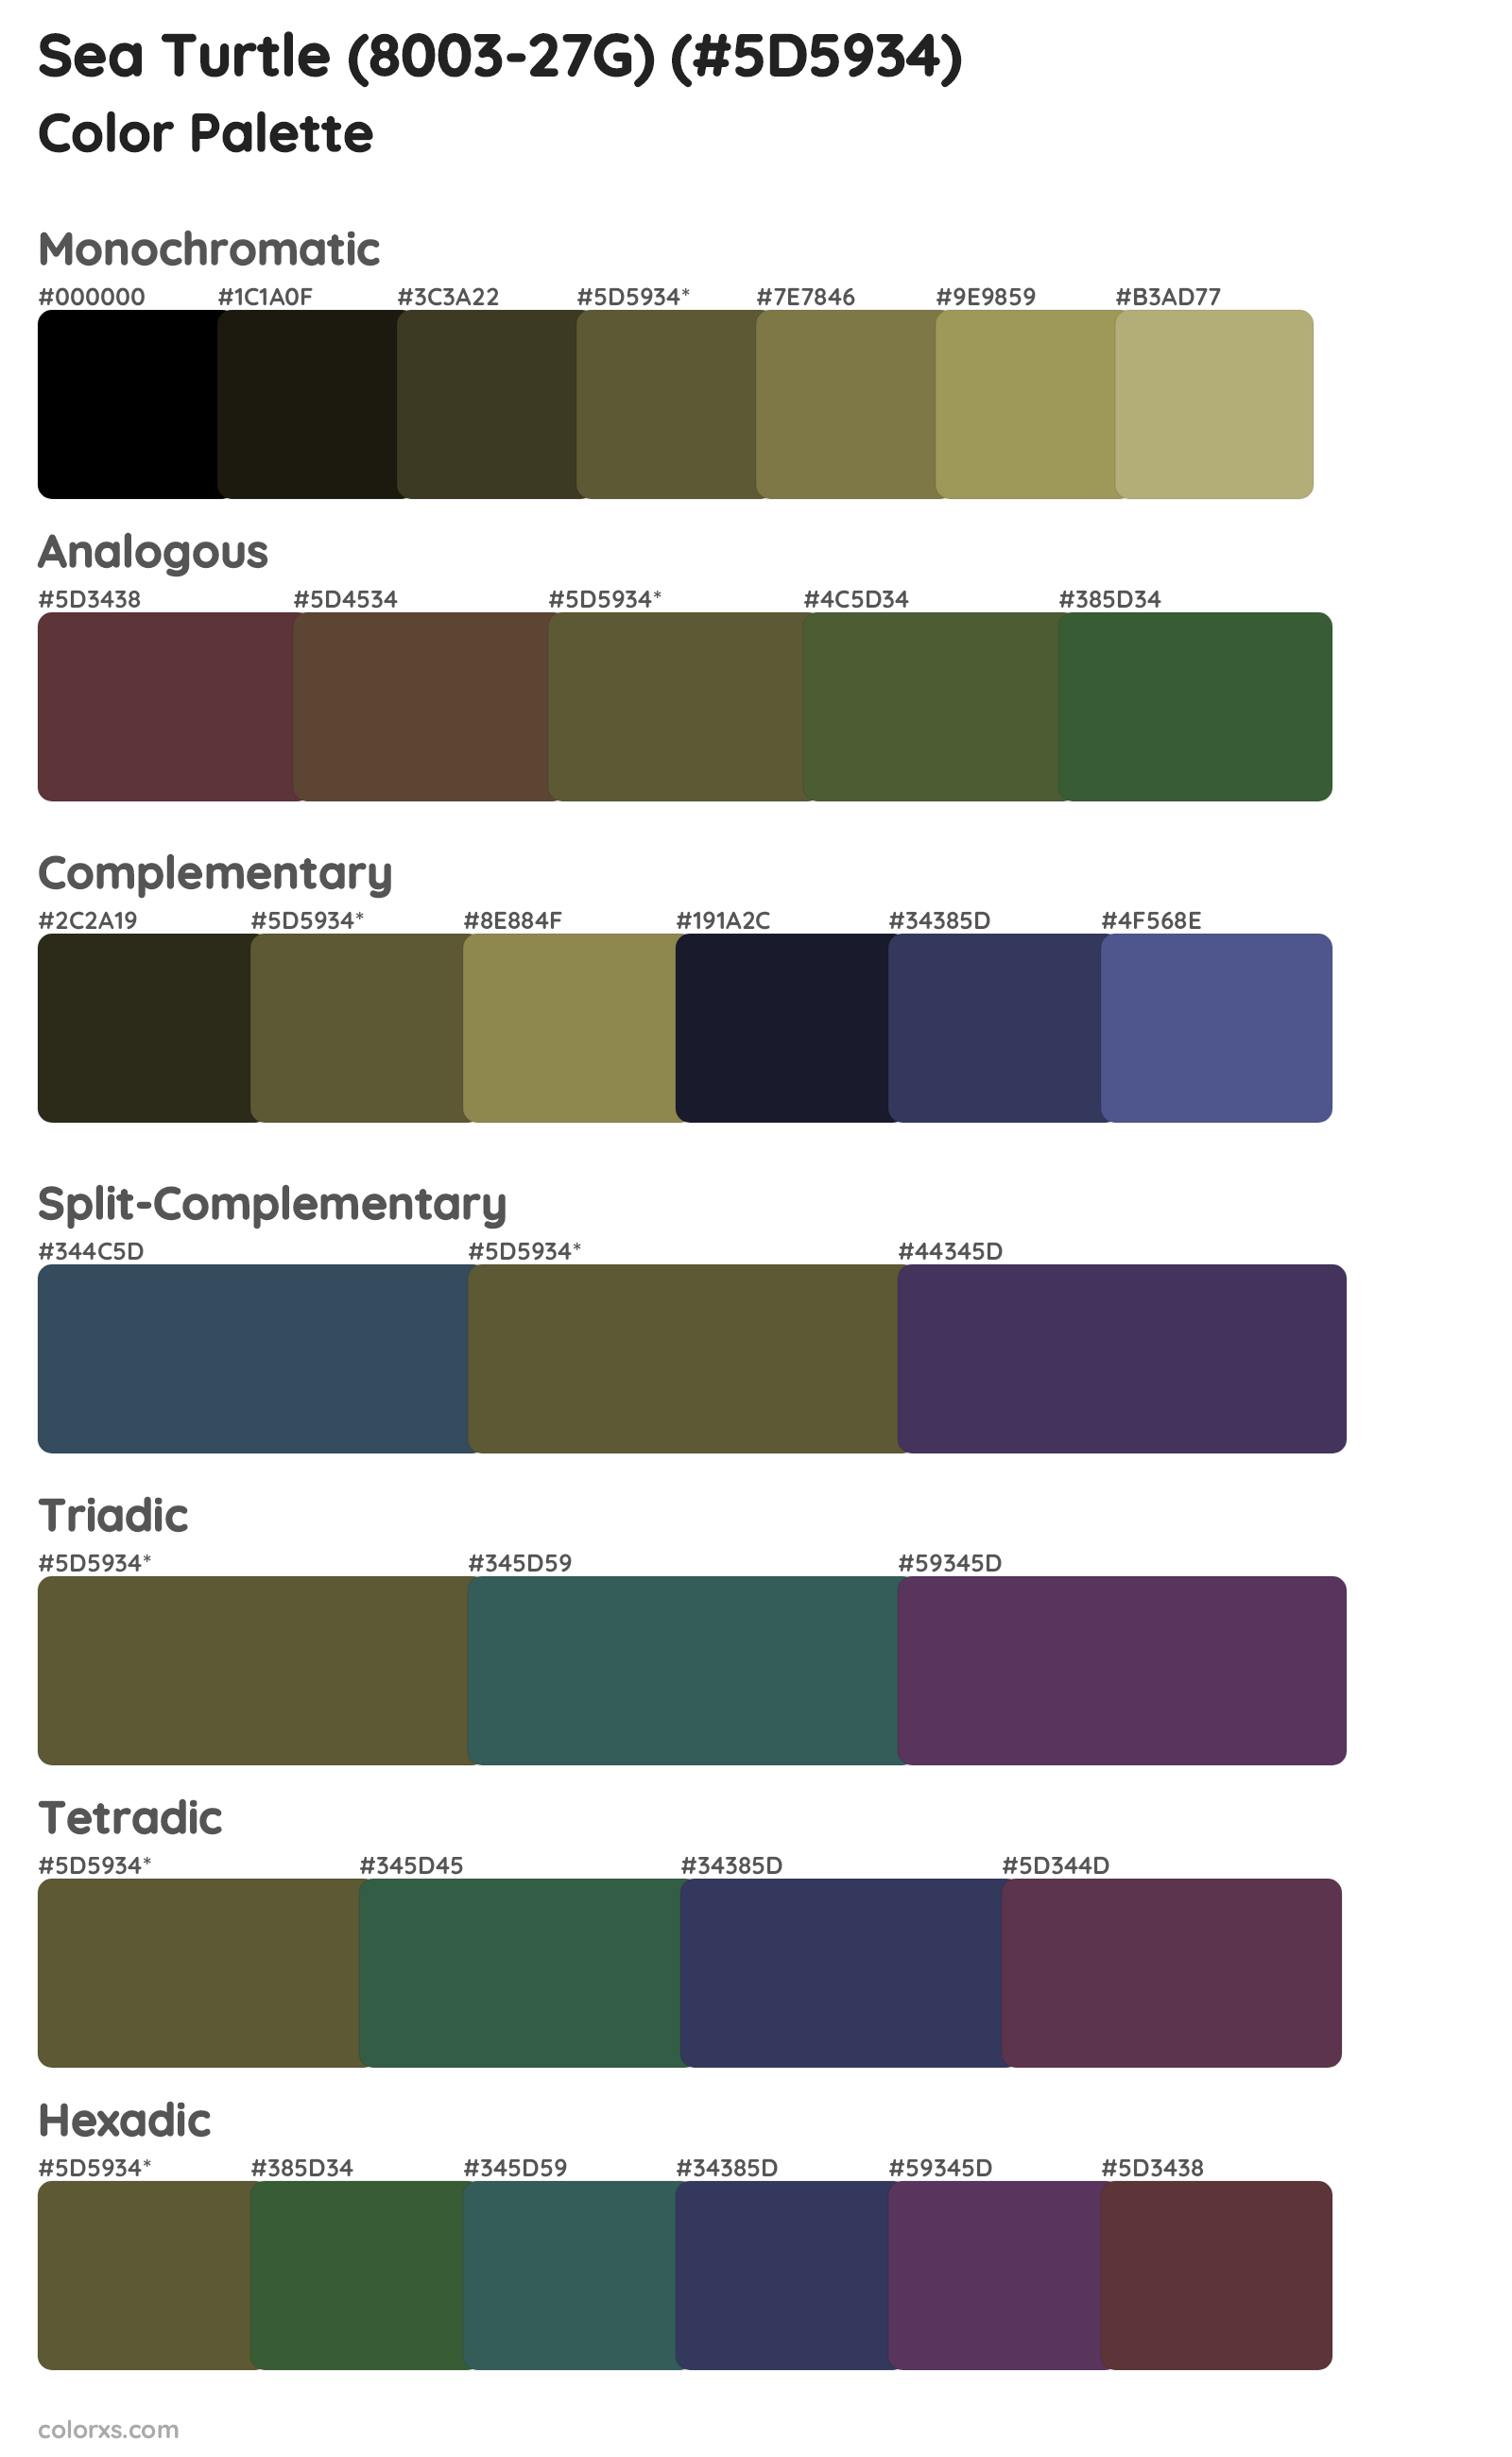 Sea Turtle (8003-27G) Color Scheme Palettes